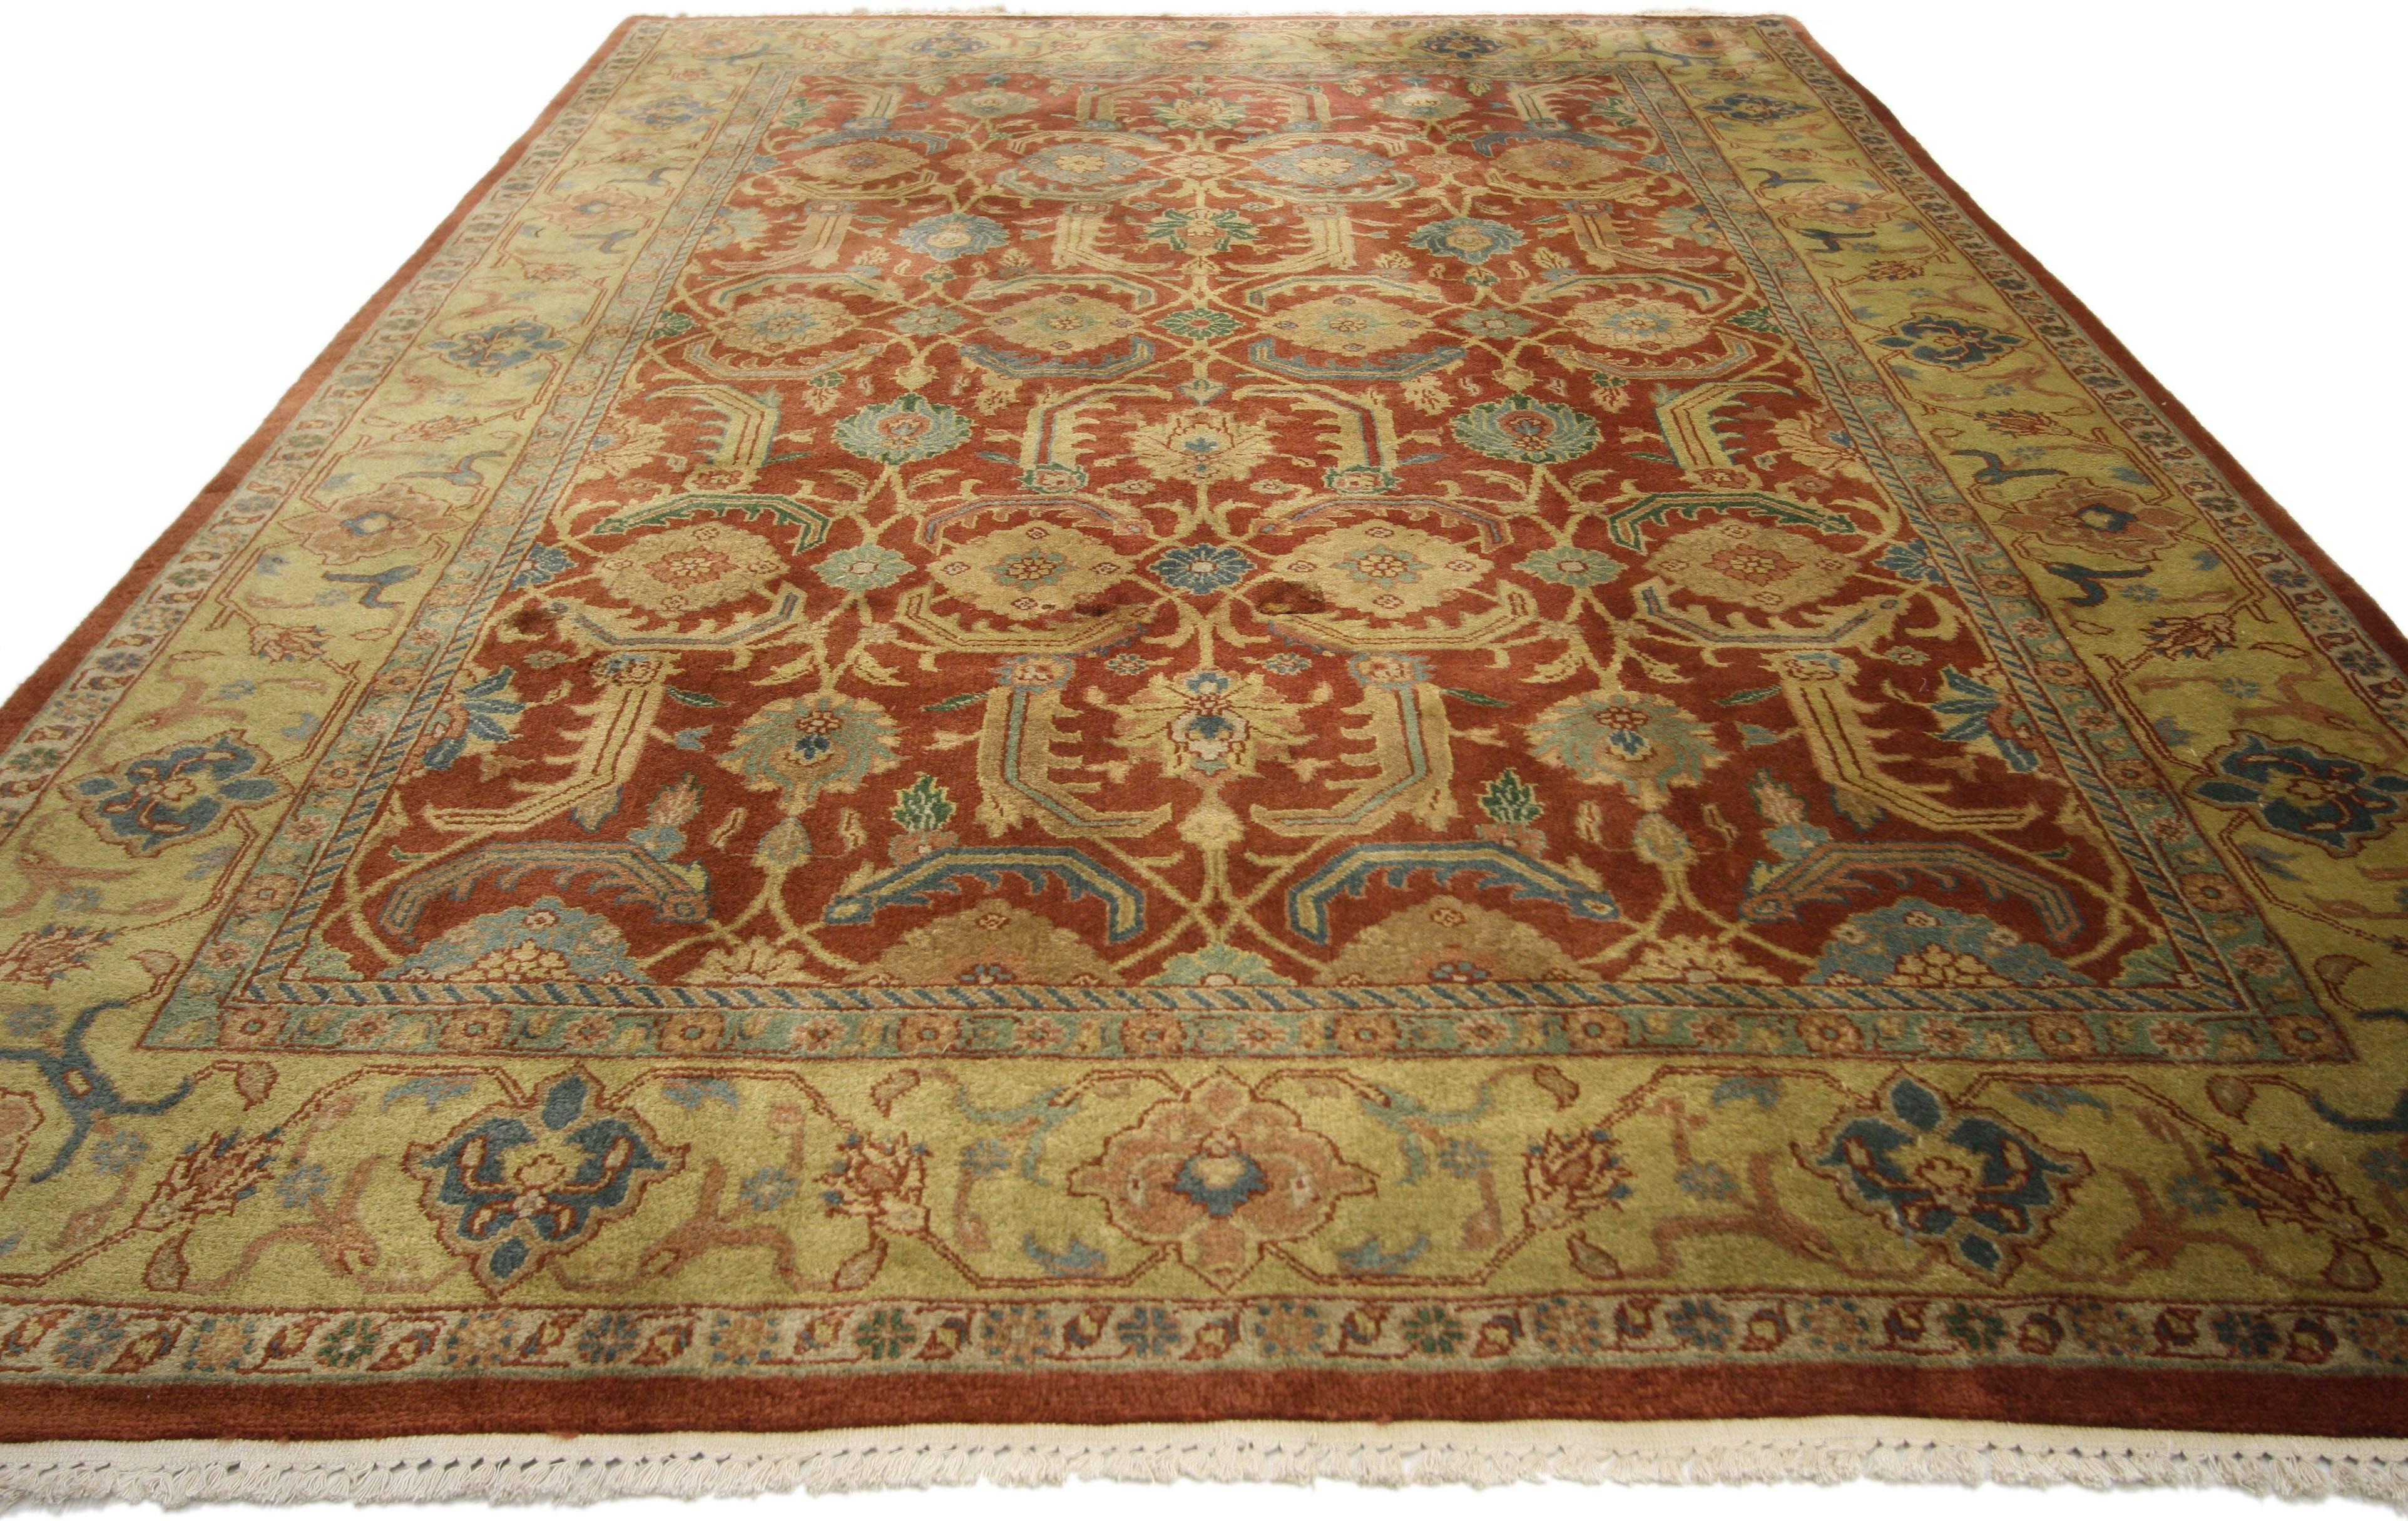 74382, klassischer indischer Teppich im traditionellen persischen Stil. Dieser handgeknüpfte indische Wollteppich im traditionellen persischen Stil zeichnet sich durch ein kühnes, florales Gittermuster aus sich wiederholenden runden Blüten aus, die